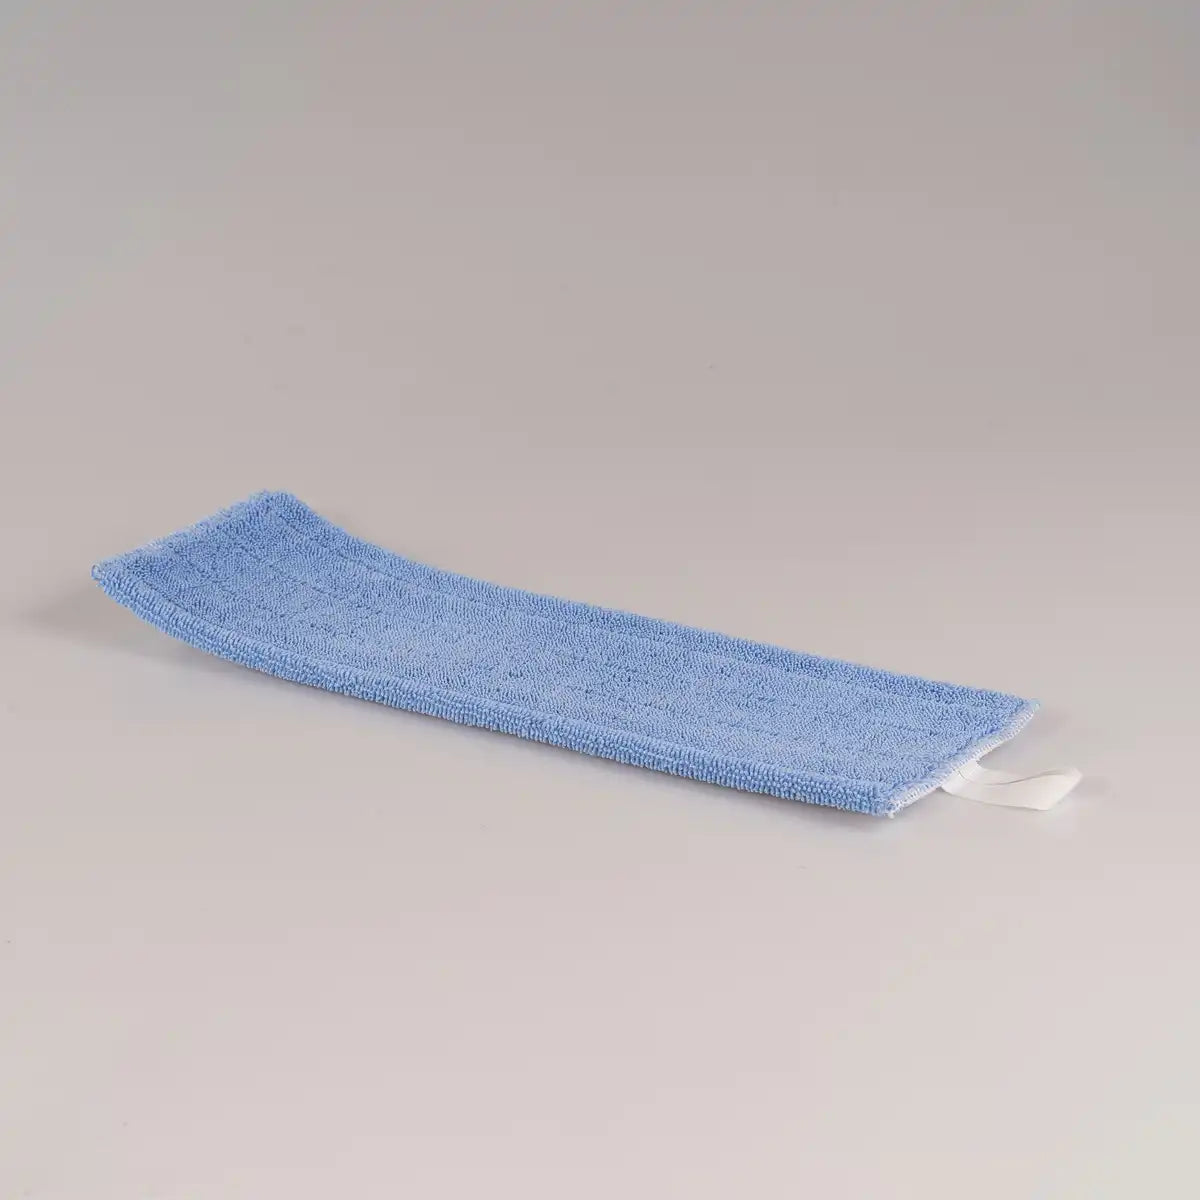 Hygiene cloth for washing